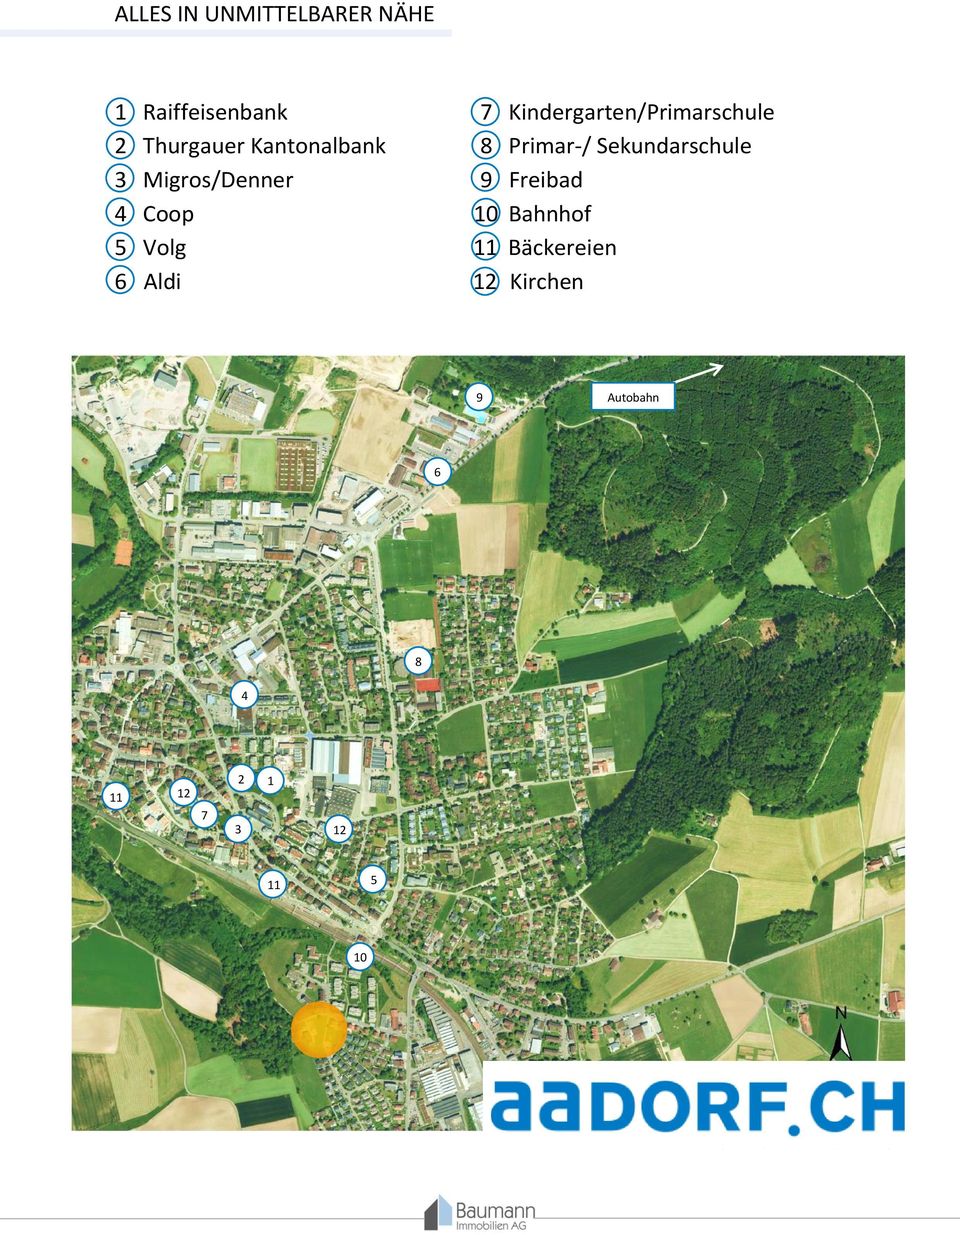 Sekundarschule 3 Migros/Denner 9 Freibad 4 Coop 10 Bahnhof 5